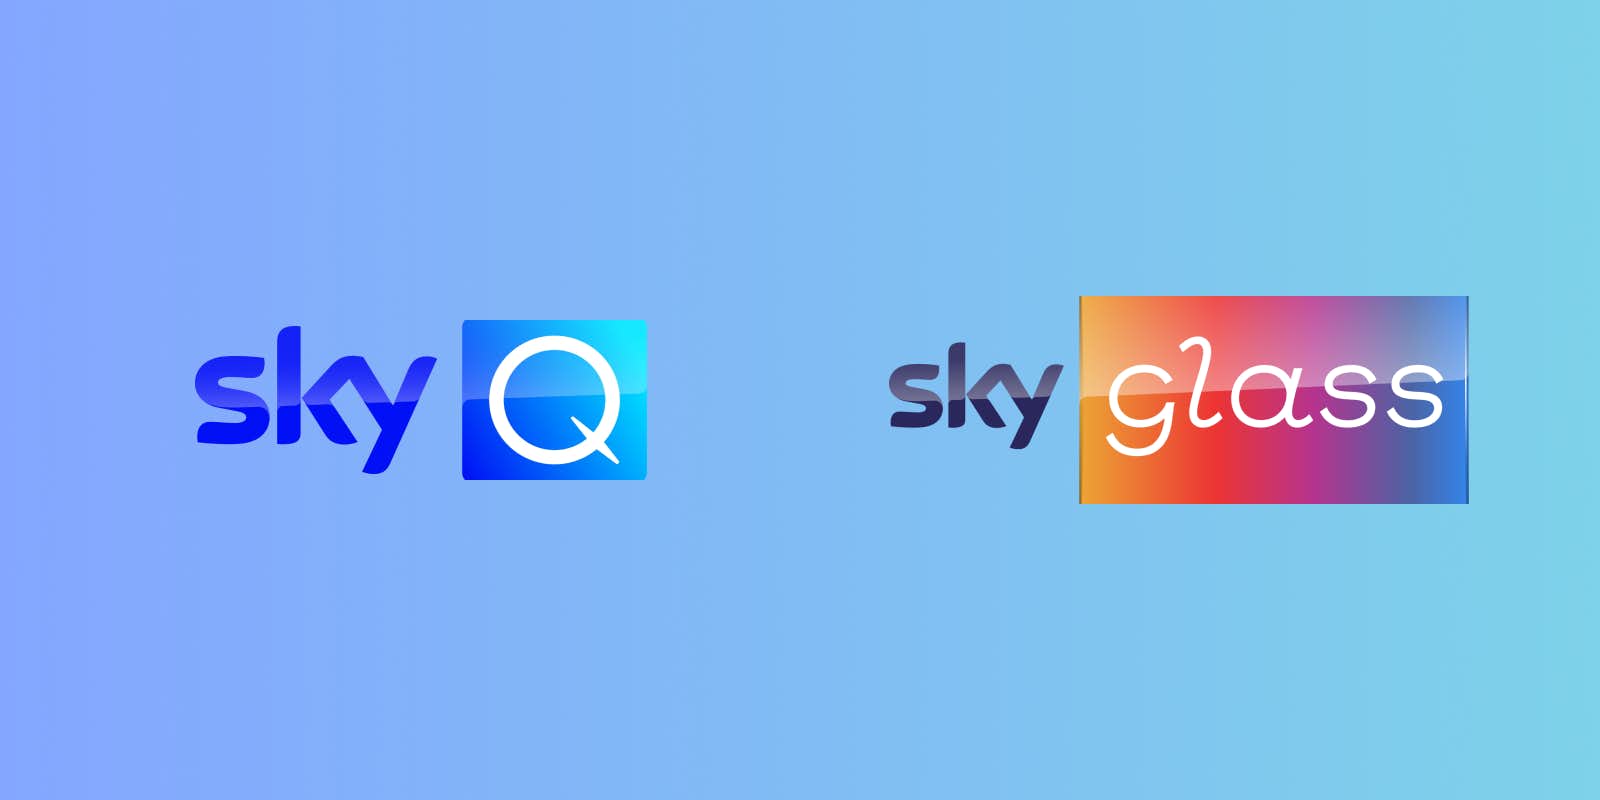 Sky Q vs Sky Glass